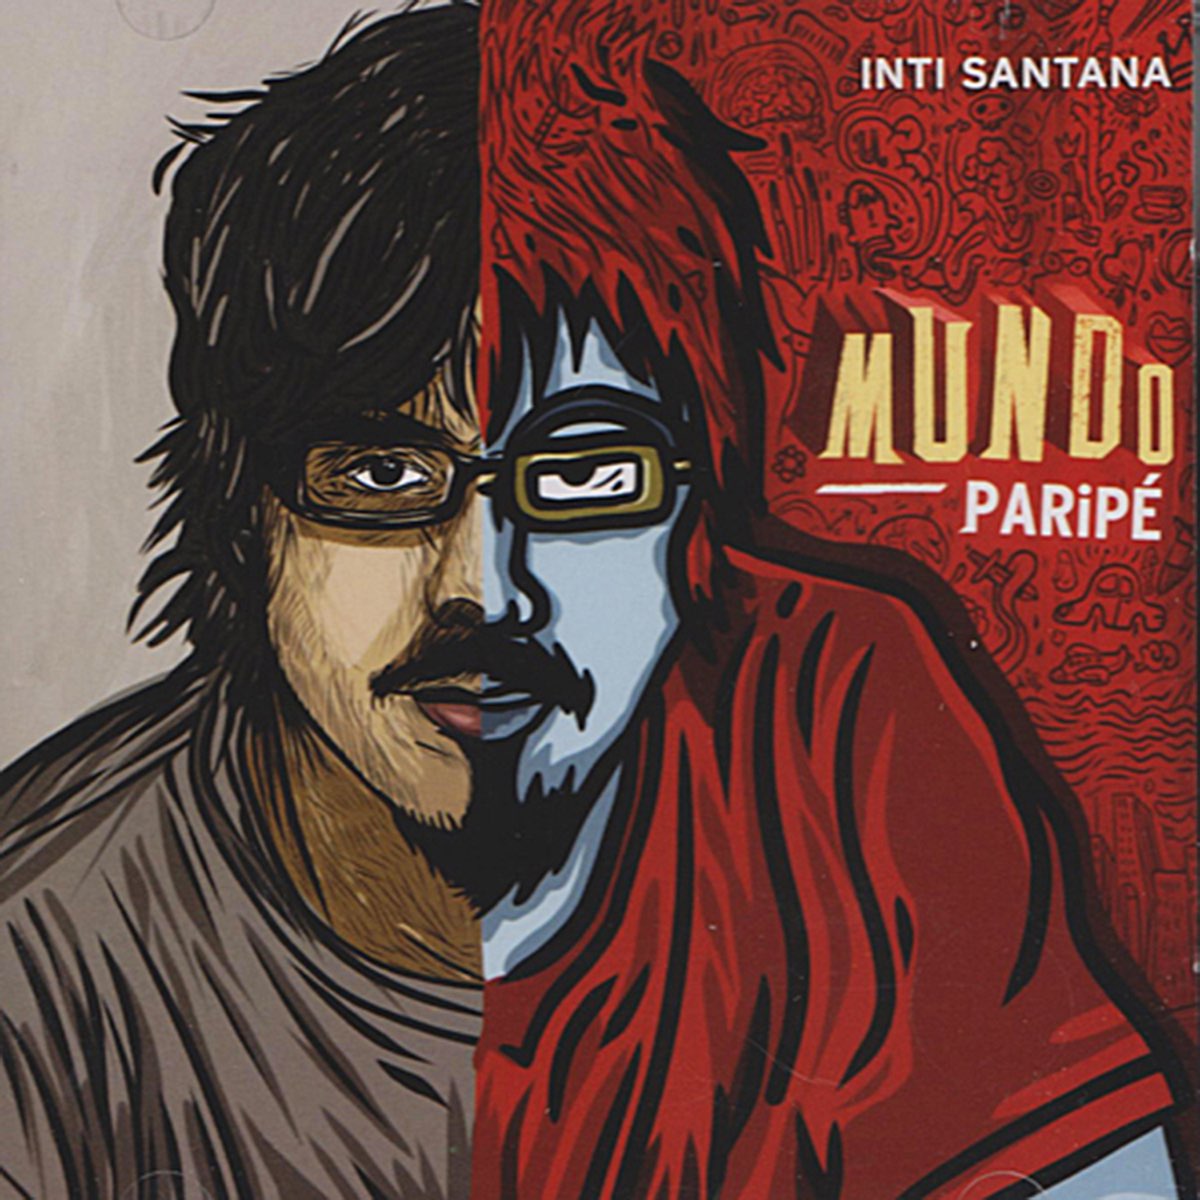 03 - Mundo Paripé – Inti Santana